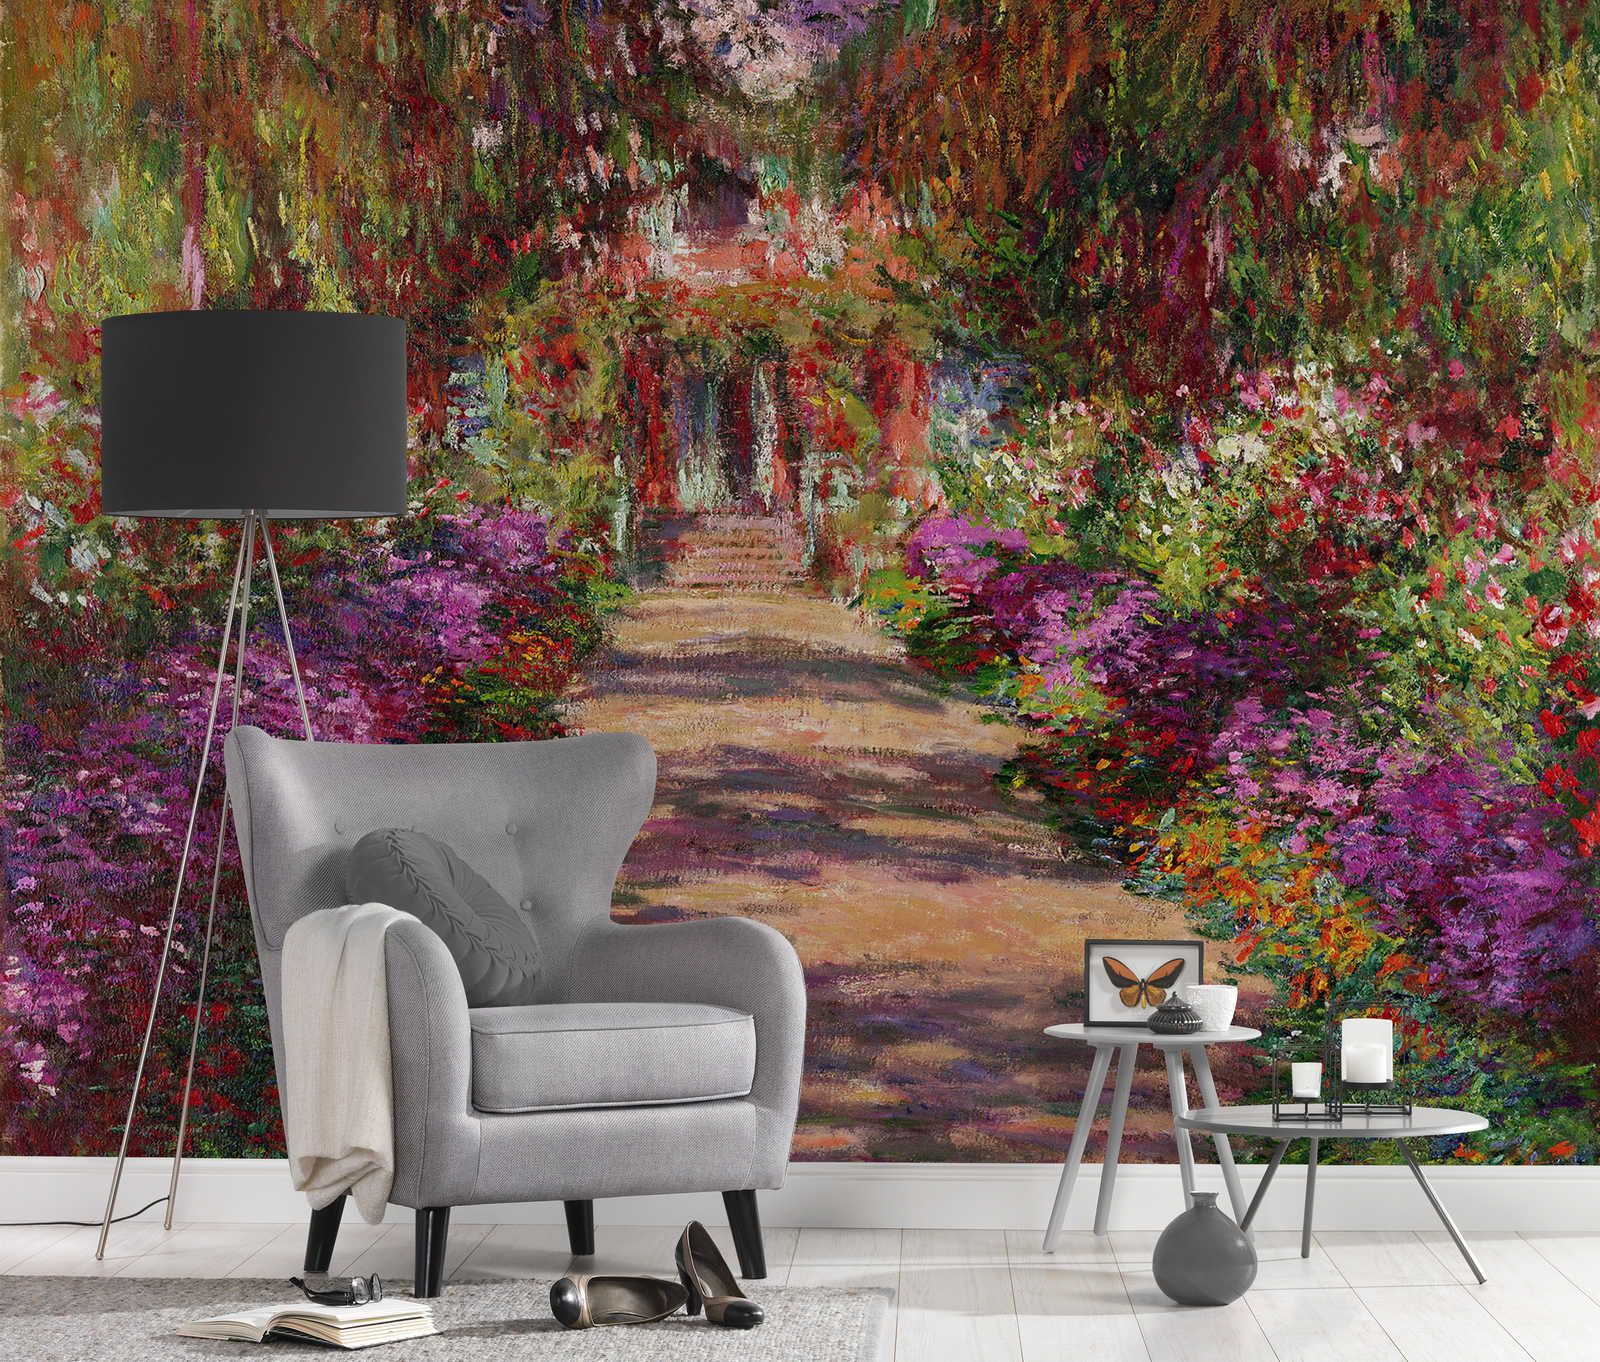             Fotomurali "Sentiero del giardino di Giverny" di Claude Monet
        